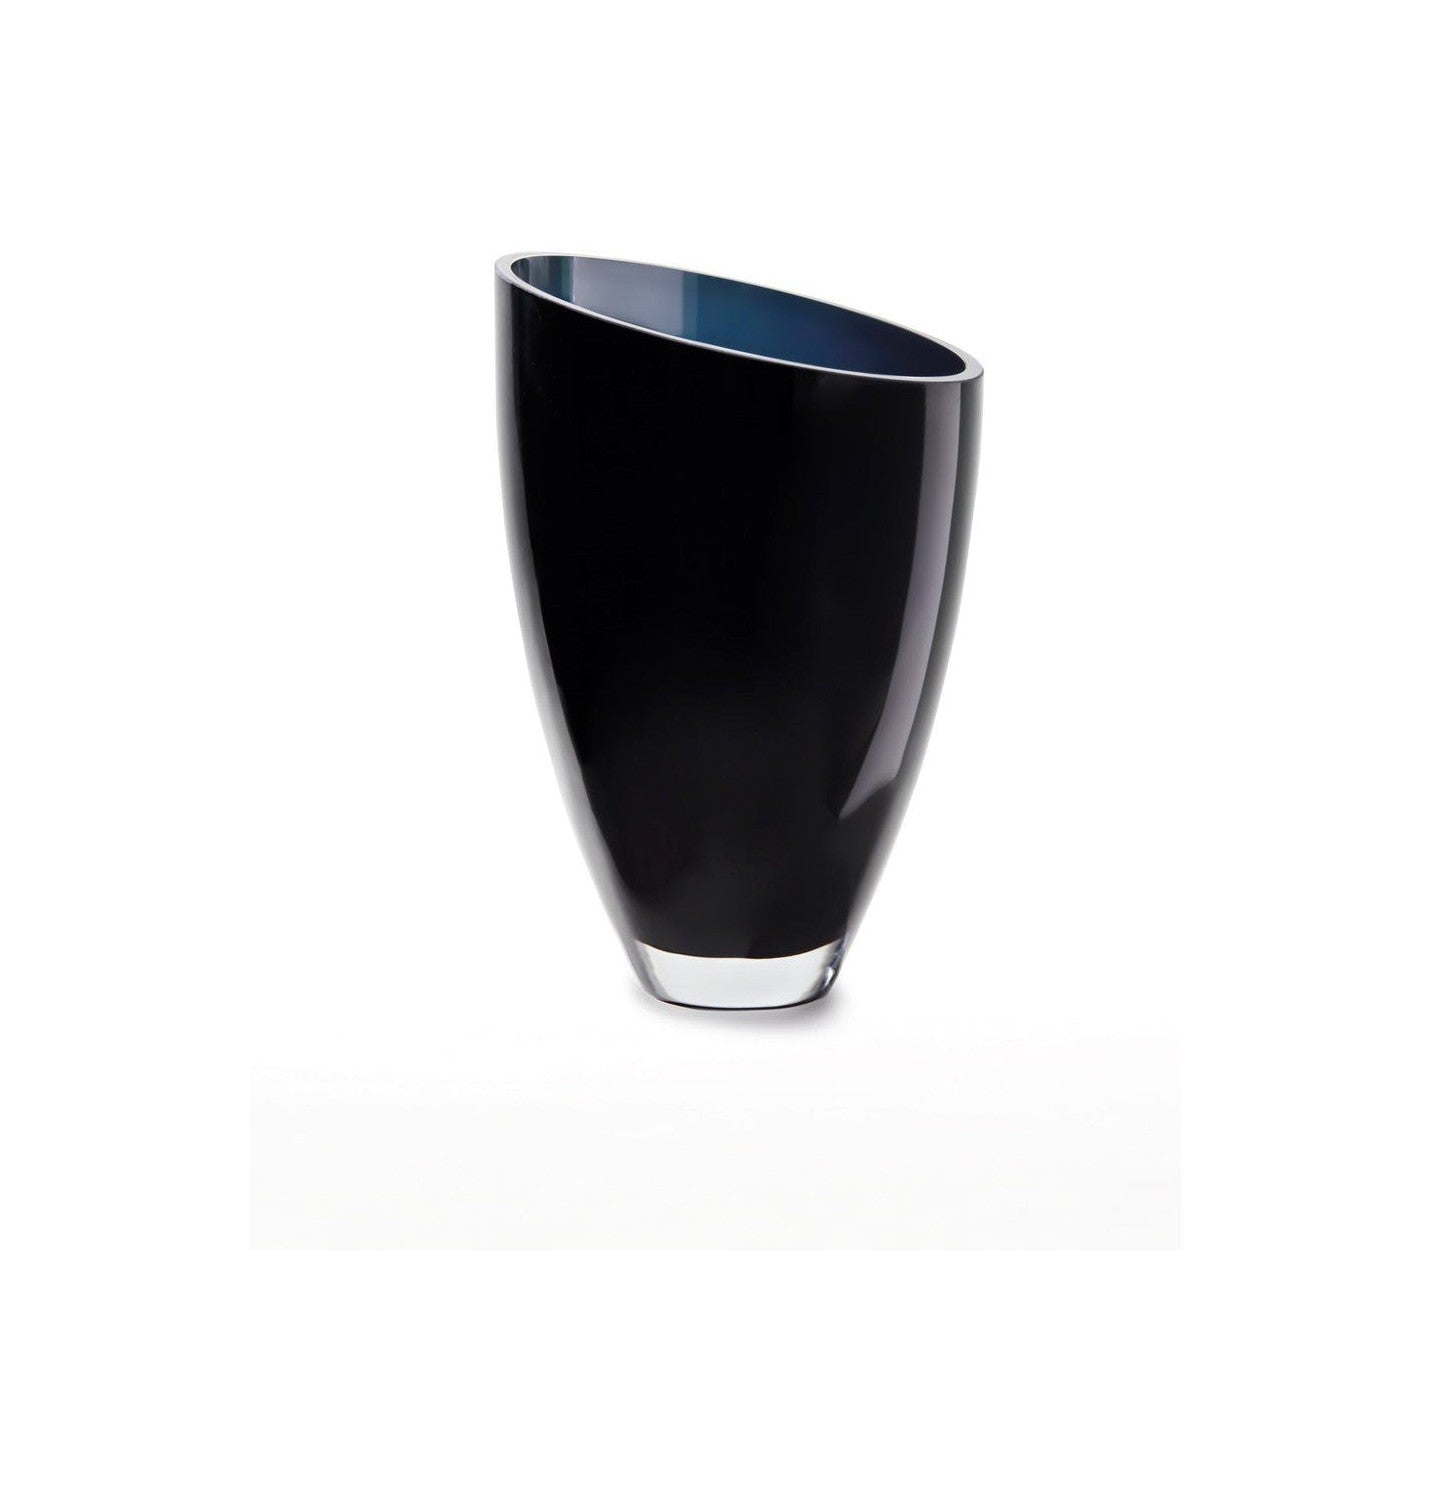 glass vase of inverse parabolic shape skewed, BULED, 9mm luxury glass